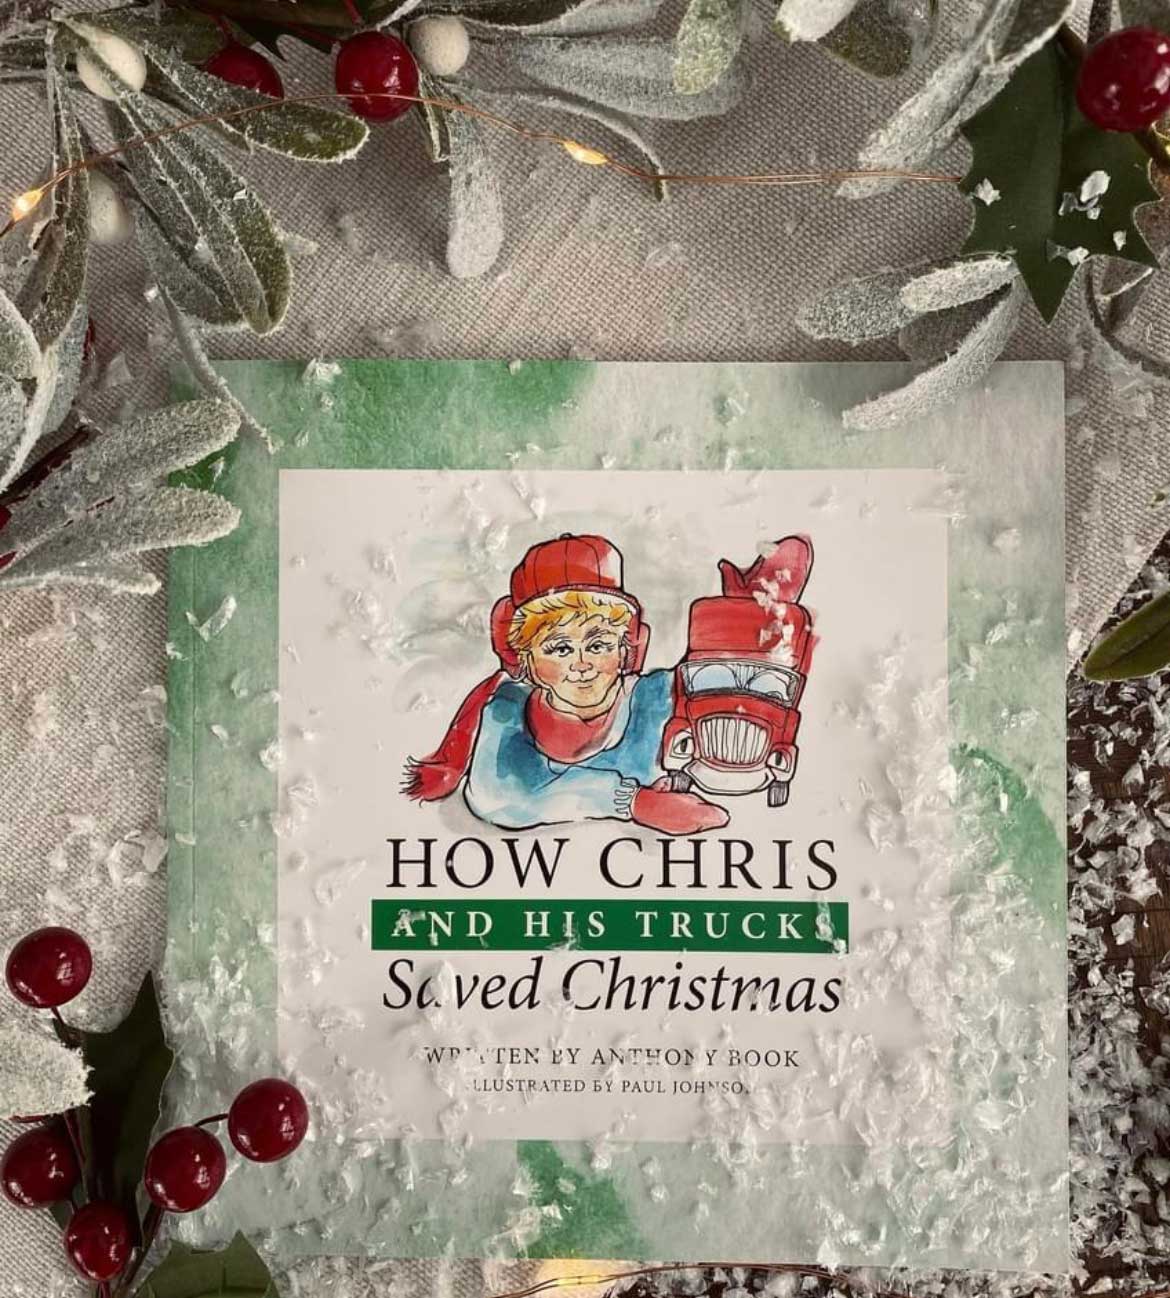 How Chris and His Trucks Saved Christmas